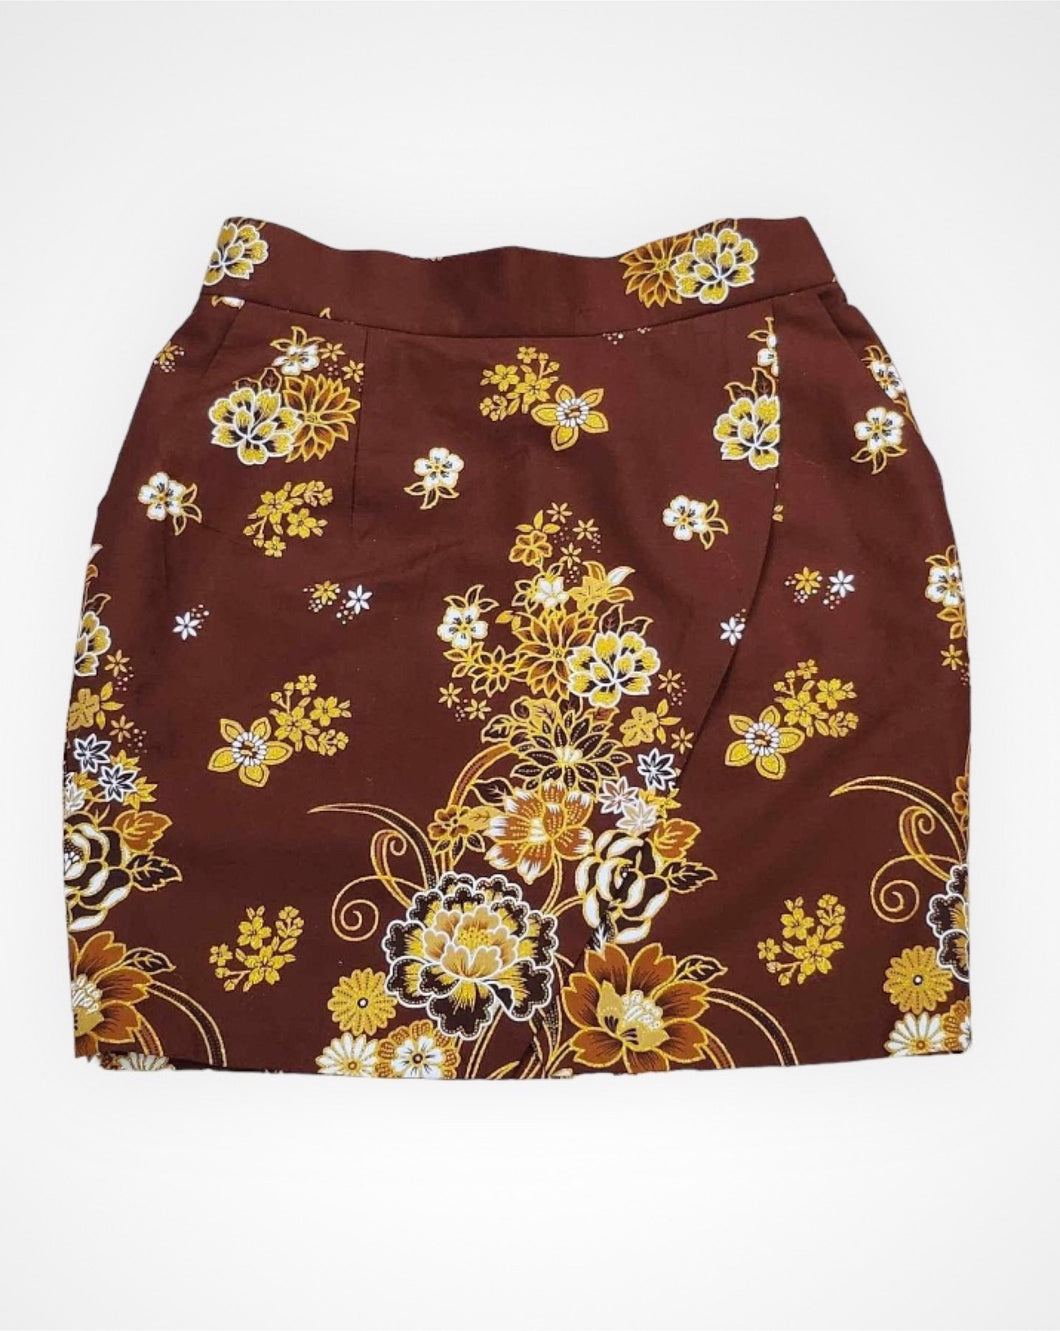 Signature Folded Sarong Short Skirt || Brown ||Size Medium